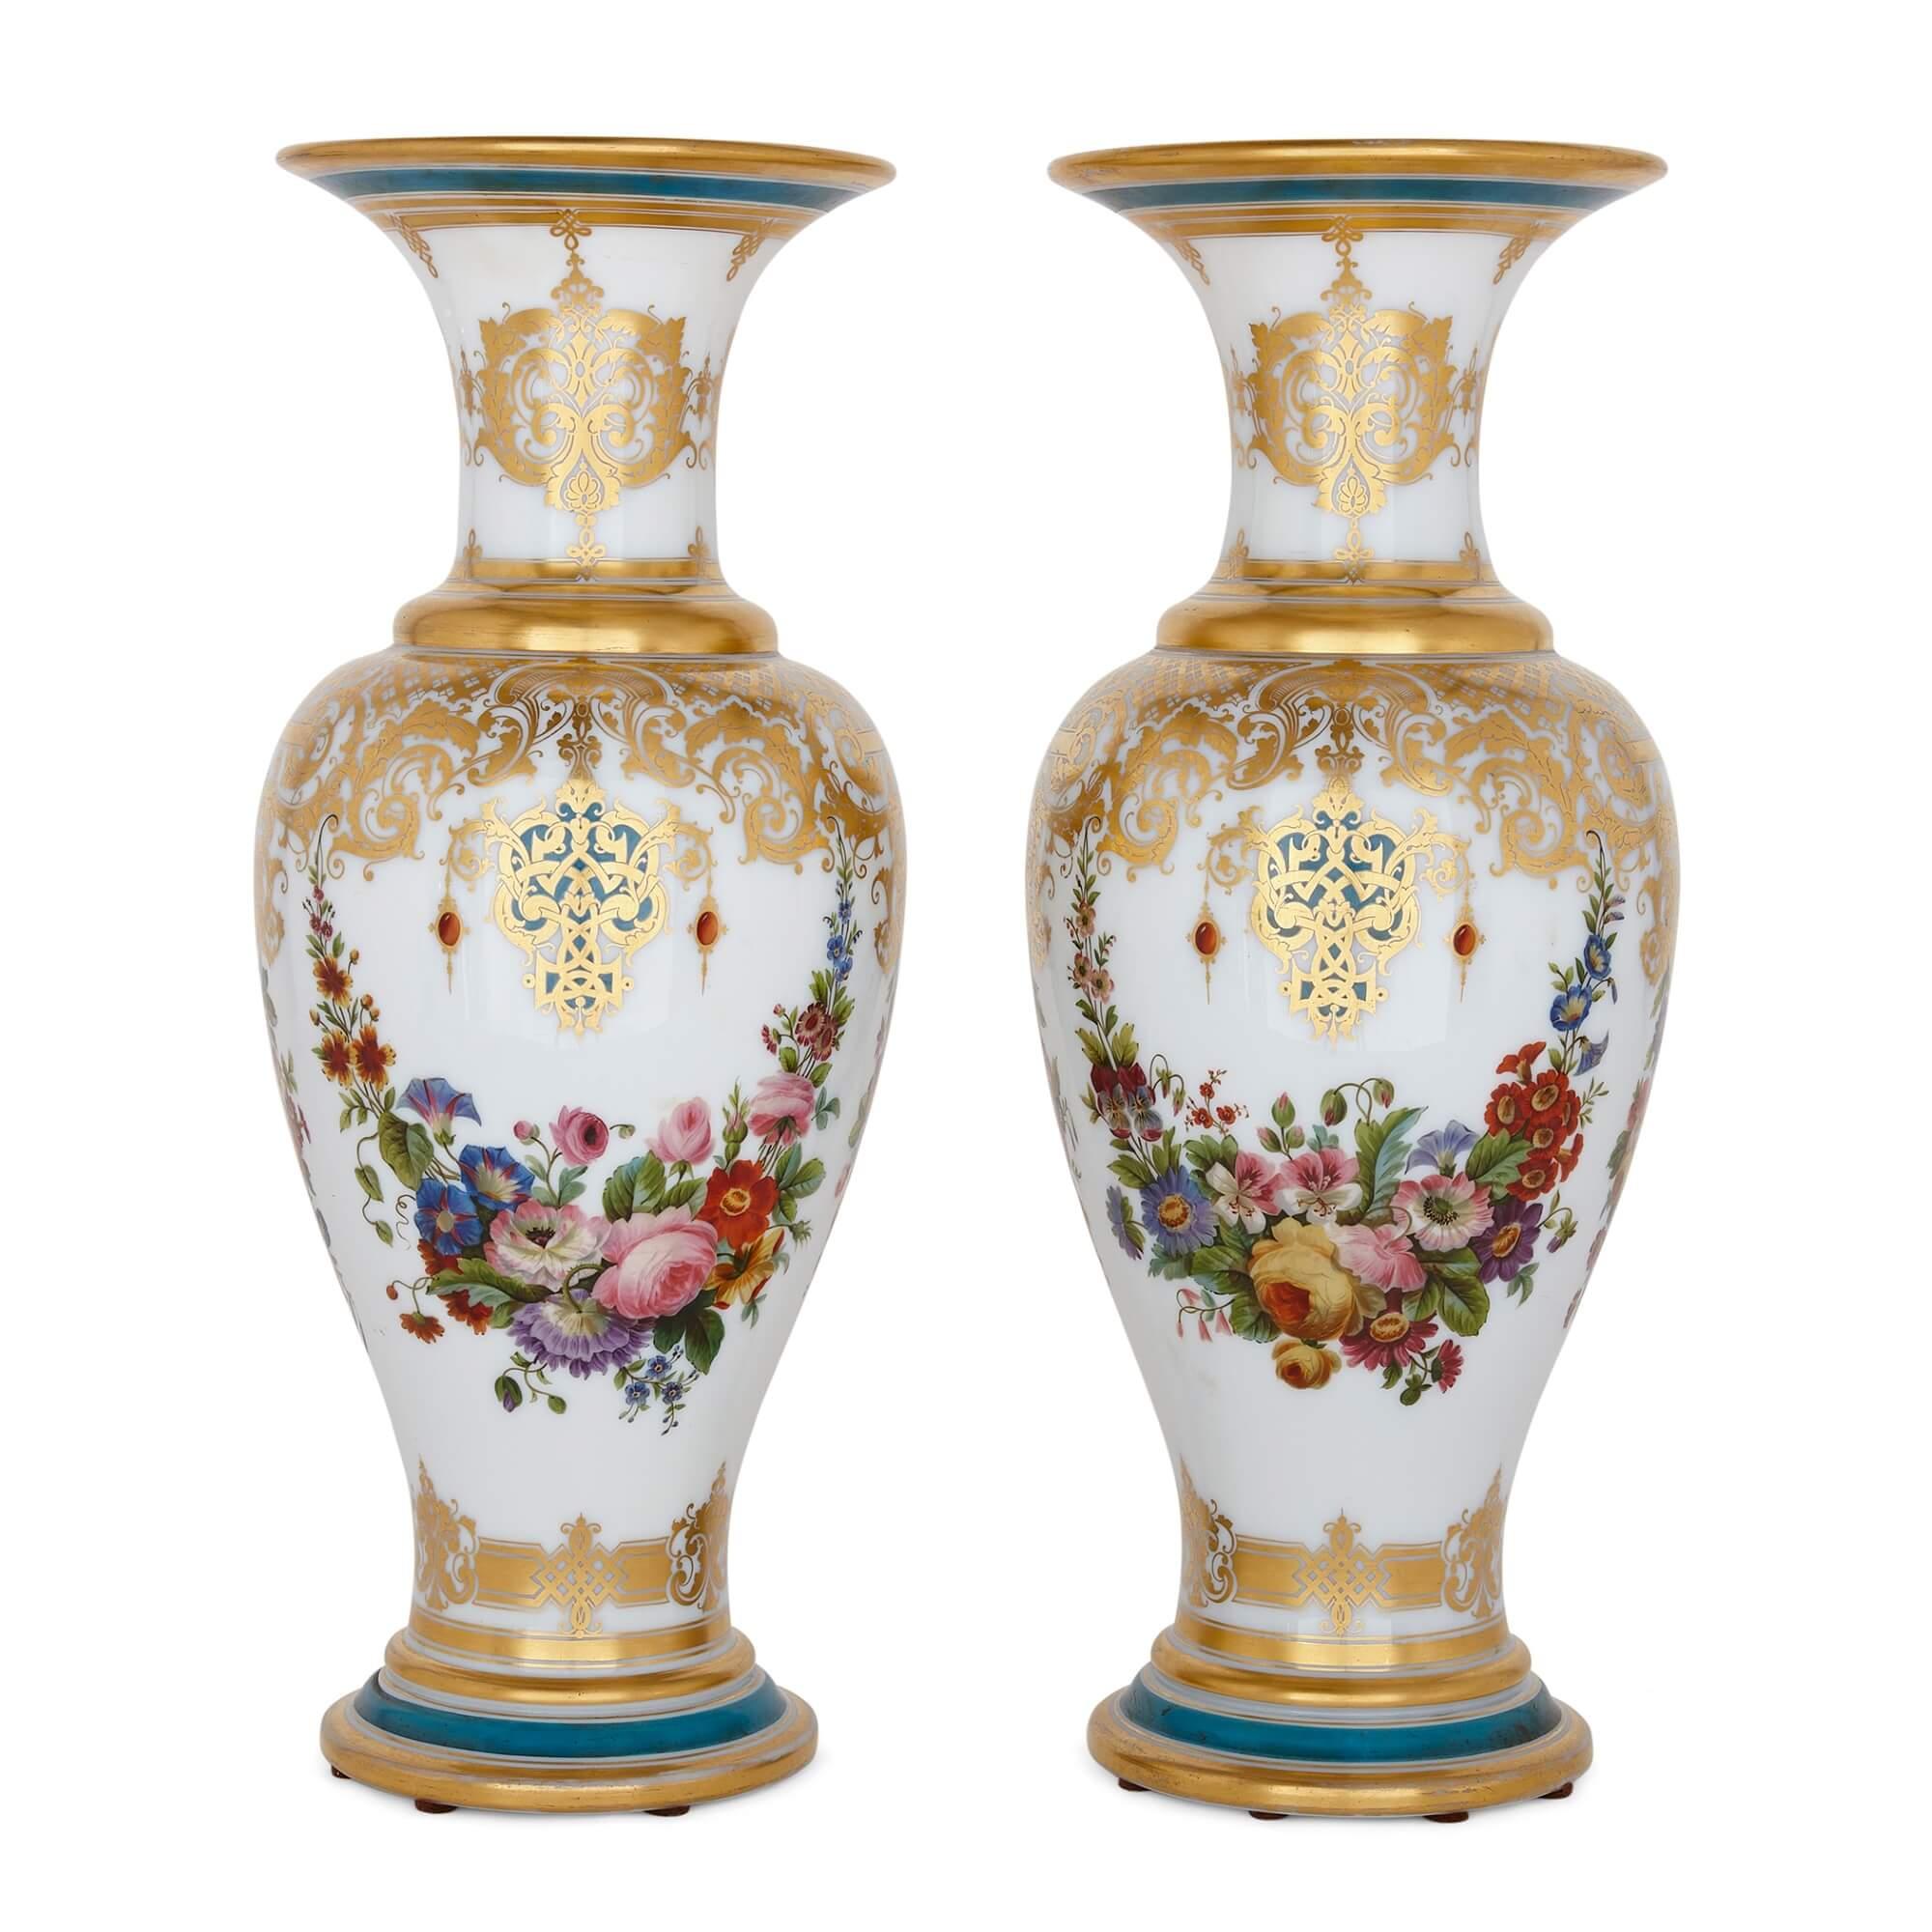 Paire de vases en verre opalin peint et parcellaire doré de Baccarat
Français, c.I.C.
Hauteur 51 cm, diamètre 21 cm

Fabriquée par la célèbre maison Baccarat en France vers 1850, cette paire de vases présente un ensemble d'ornements de style rococo.